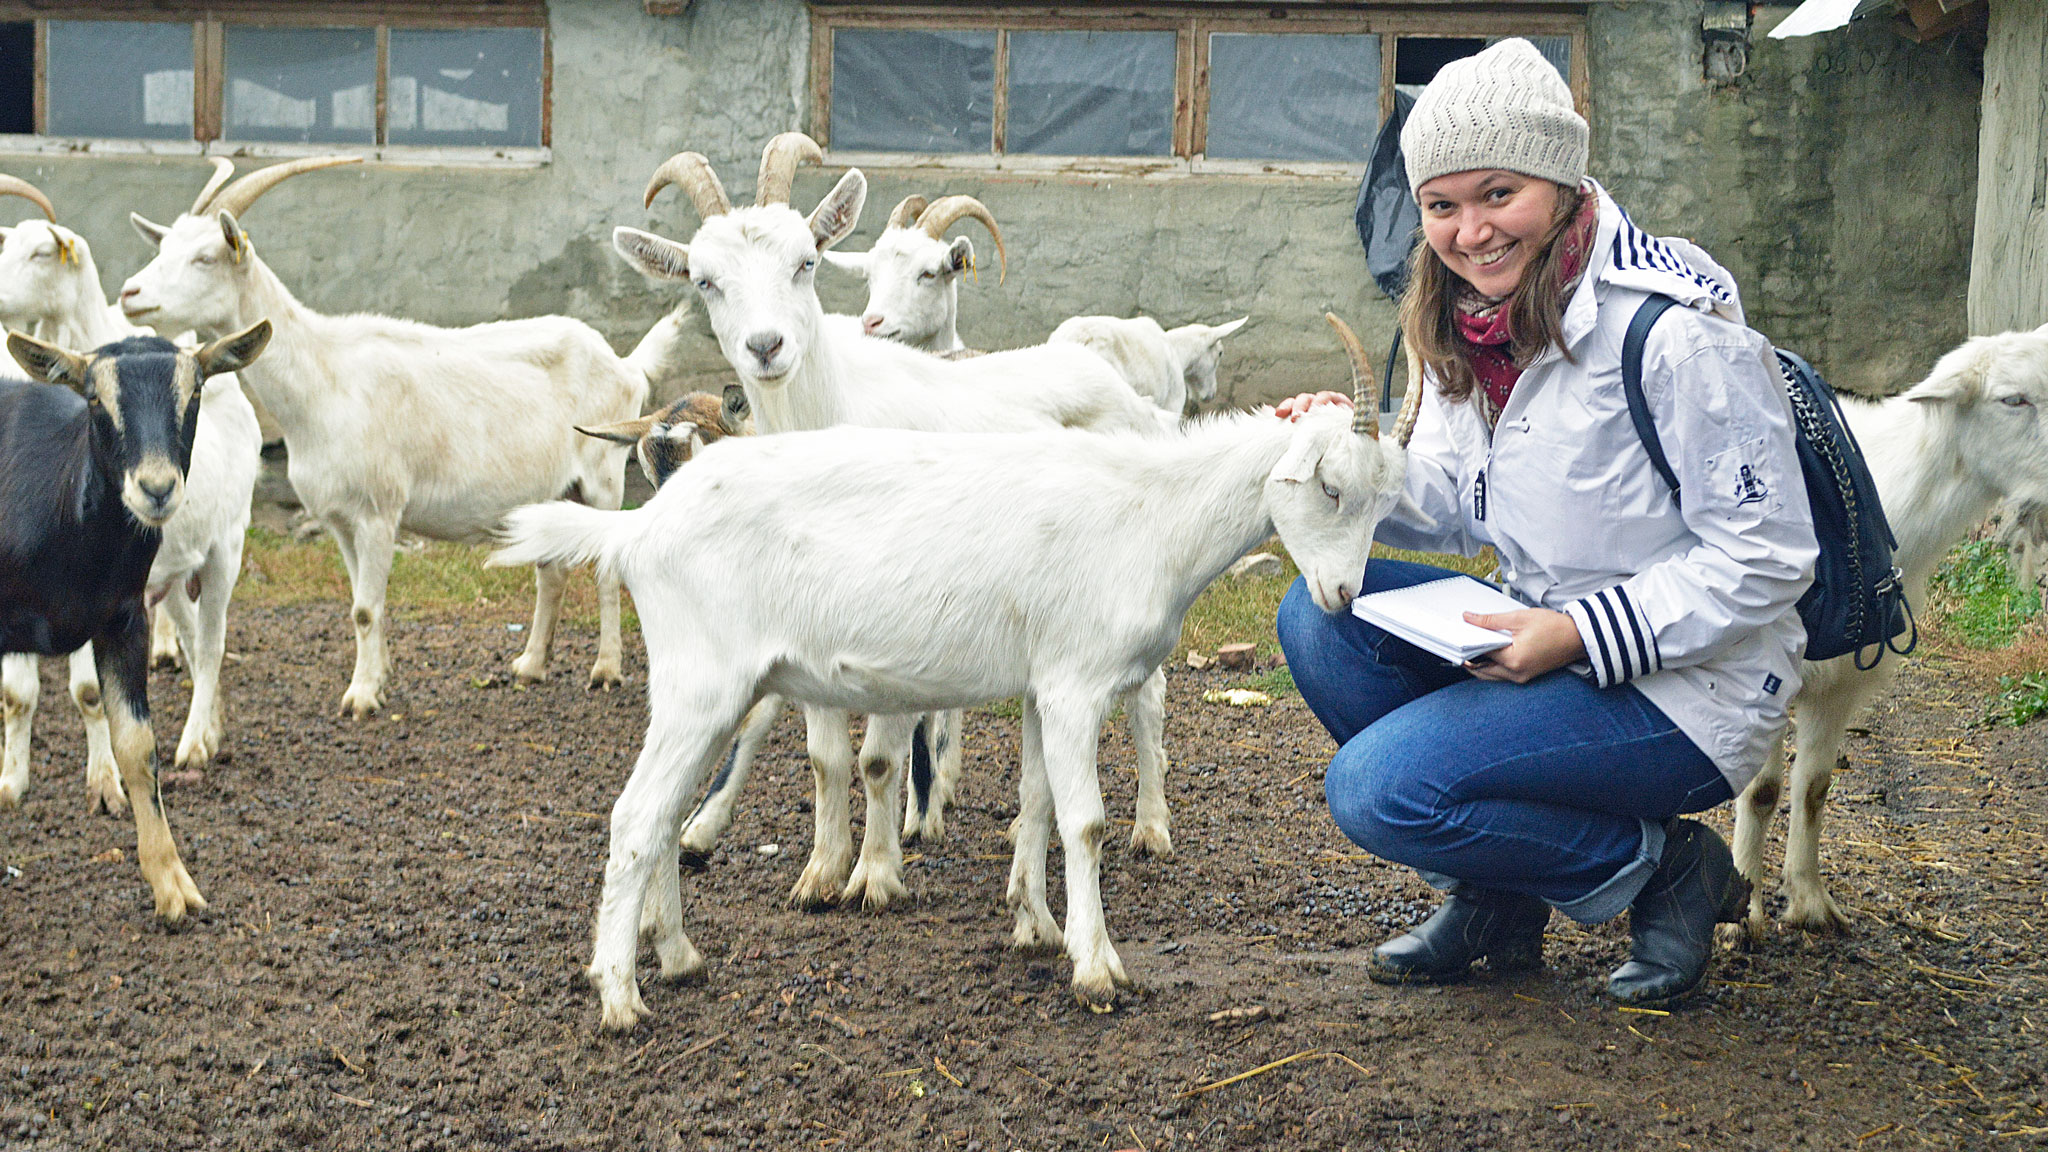 Репортаж с фермы готовит журналист Елена Куликова